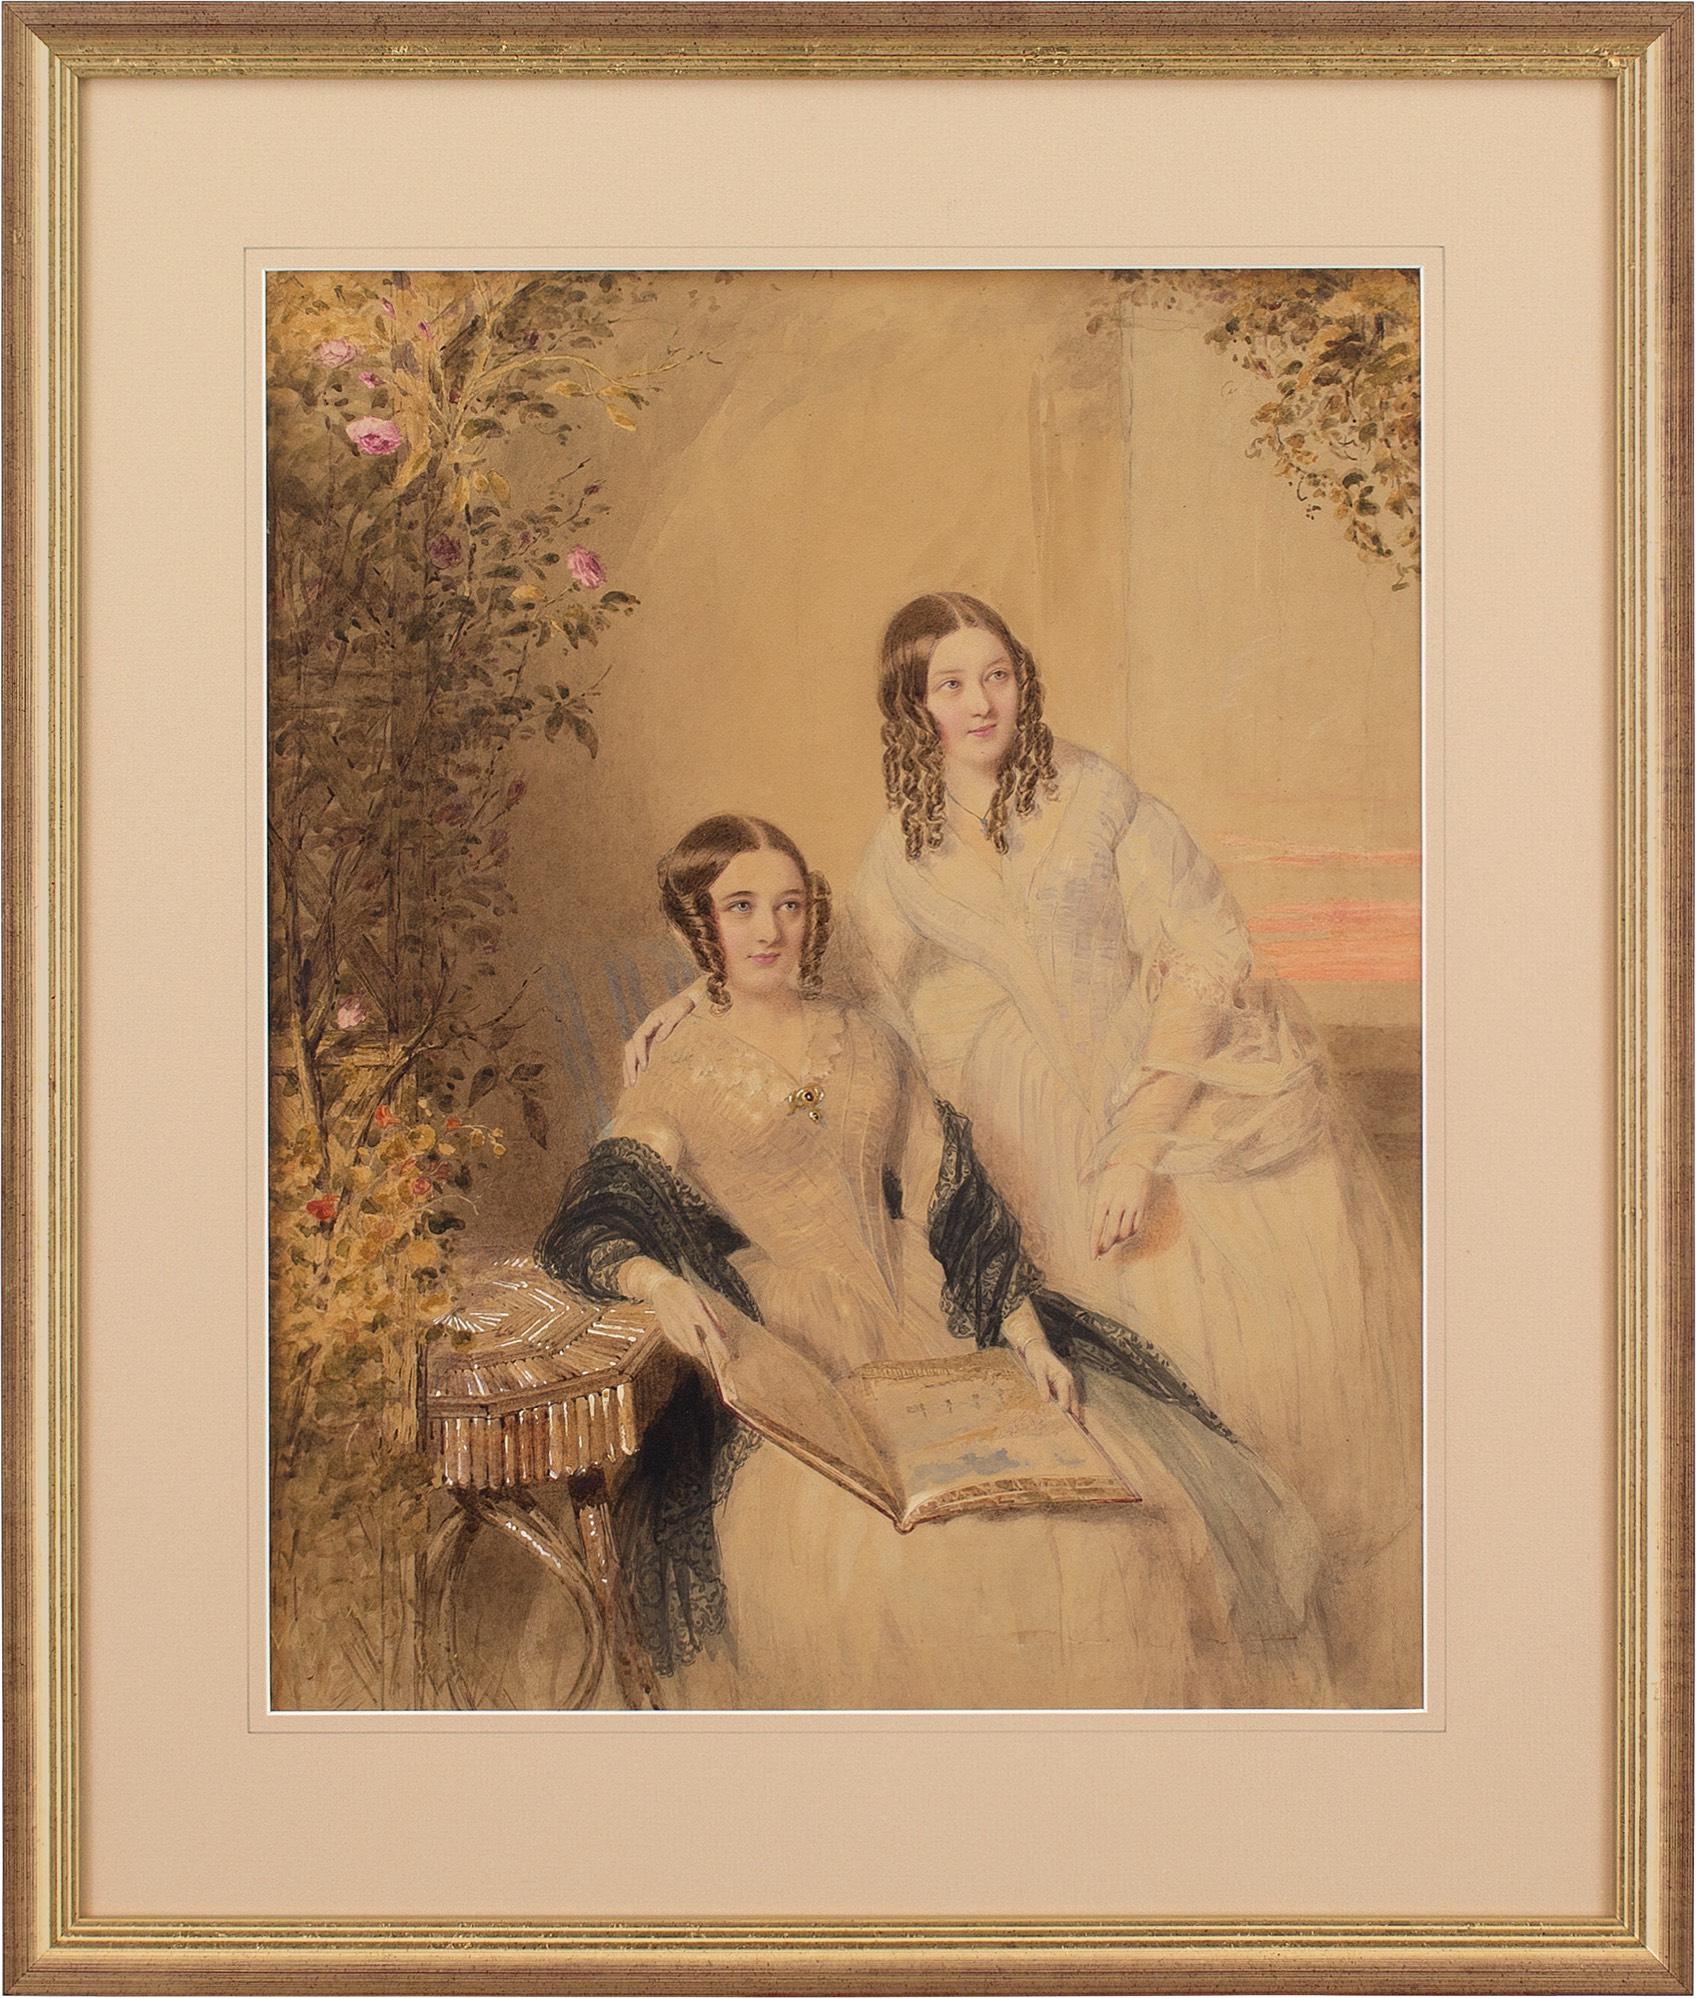 William Drummond, Portrait de deux sœurs, aquarelle